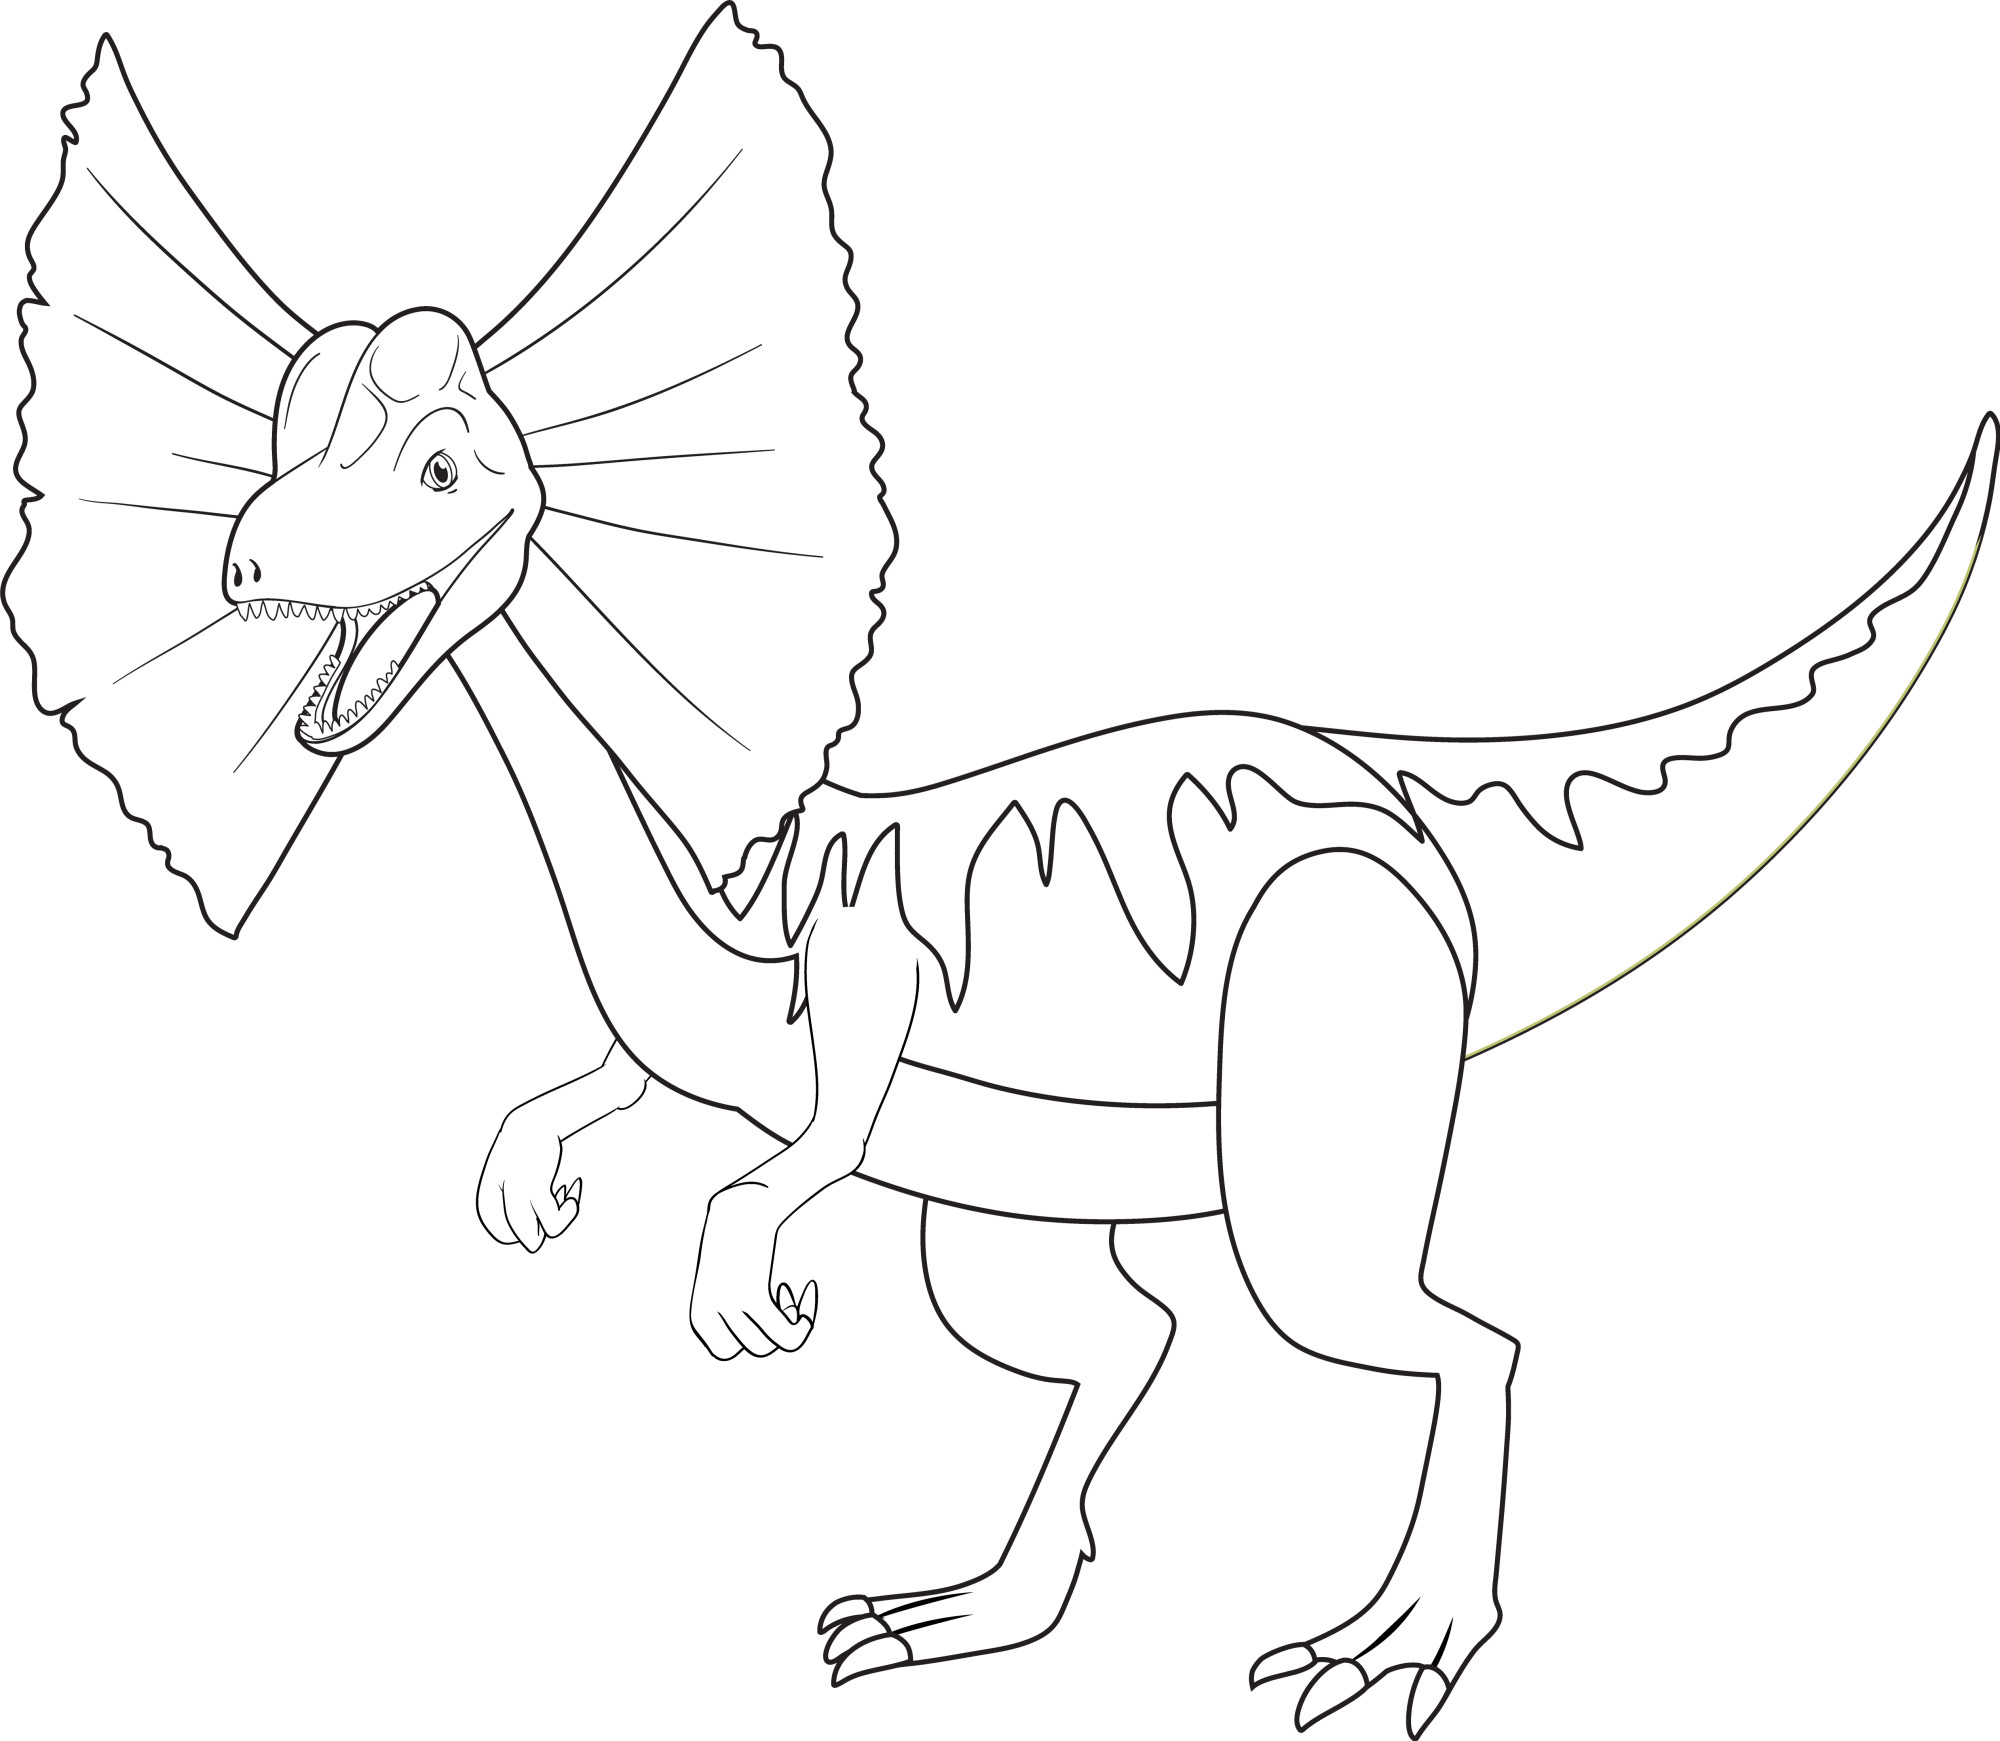 Раскраска для детей: динозавр дилофозавр